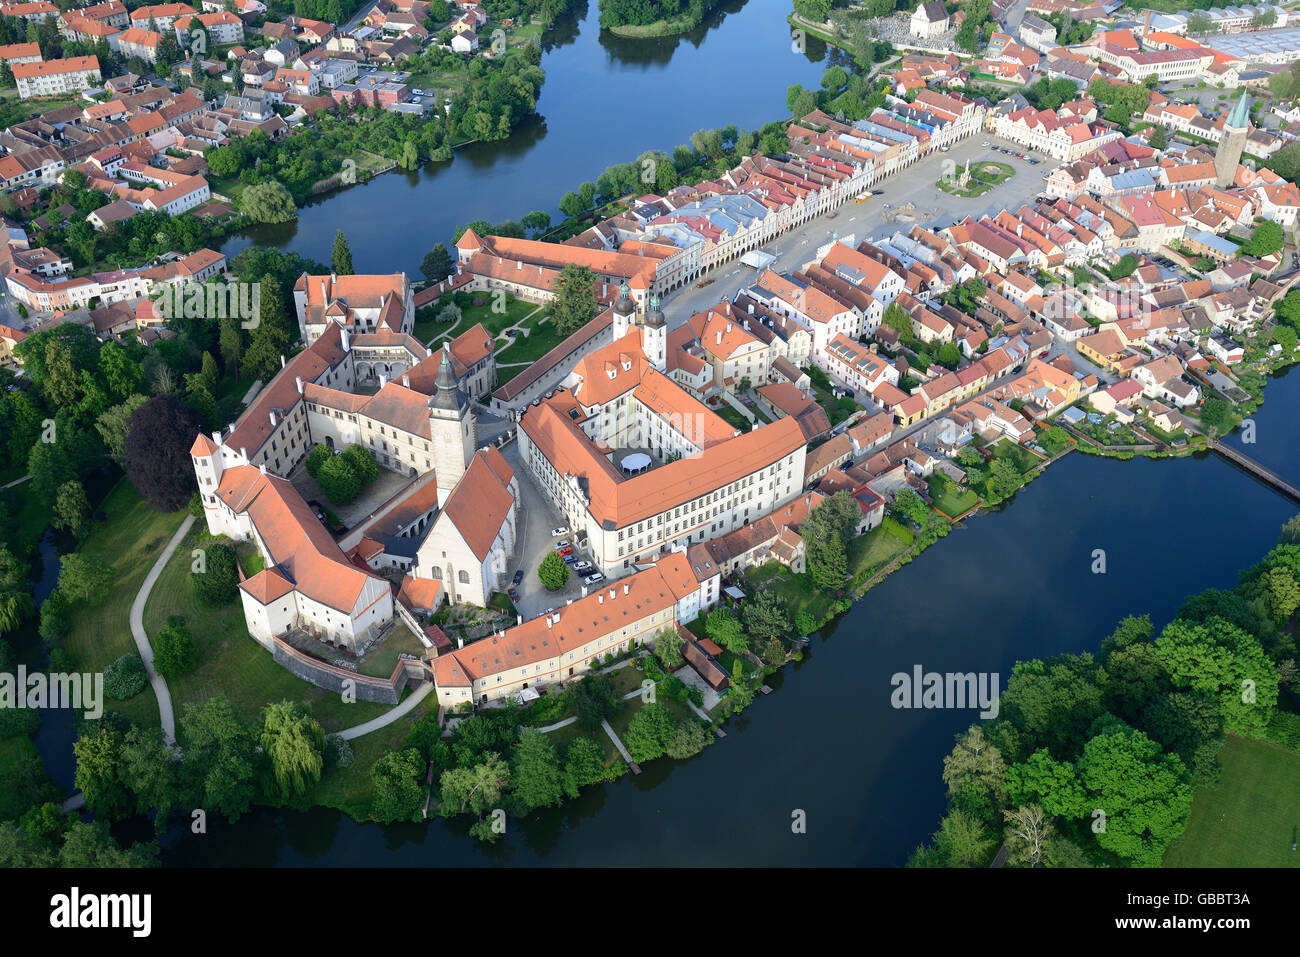 VISTA AEREA. Città medievale con una notevole architettura, patrimonio dell'umanità dell'UNESCO. Telč, Distretto di Jihlava, Moravia, Repubblica Ceca. Foto Stock